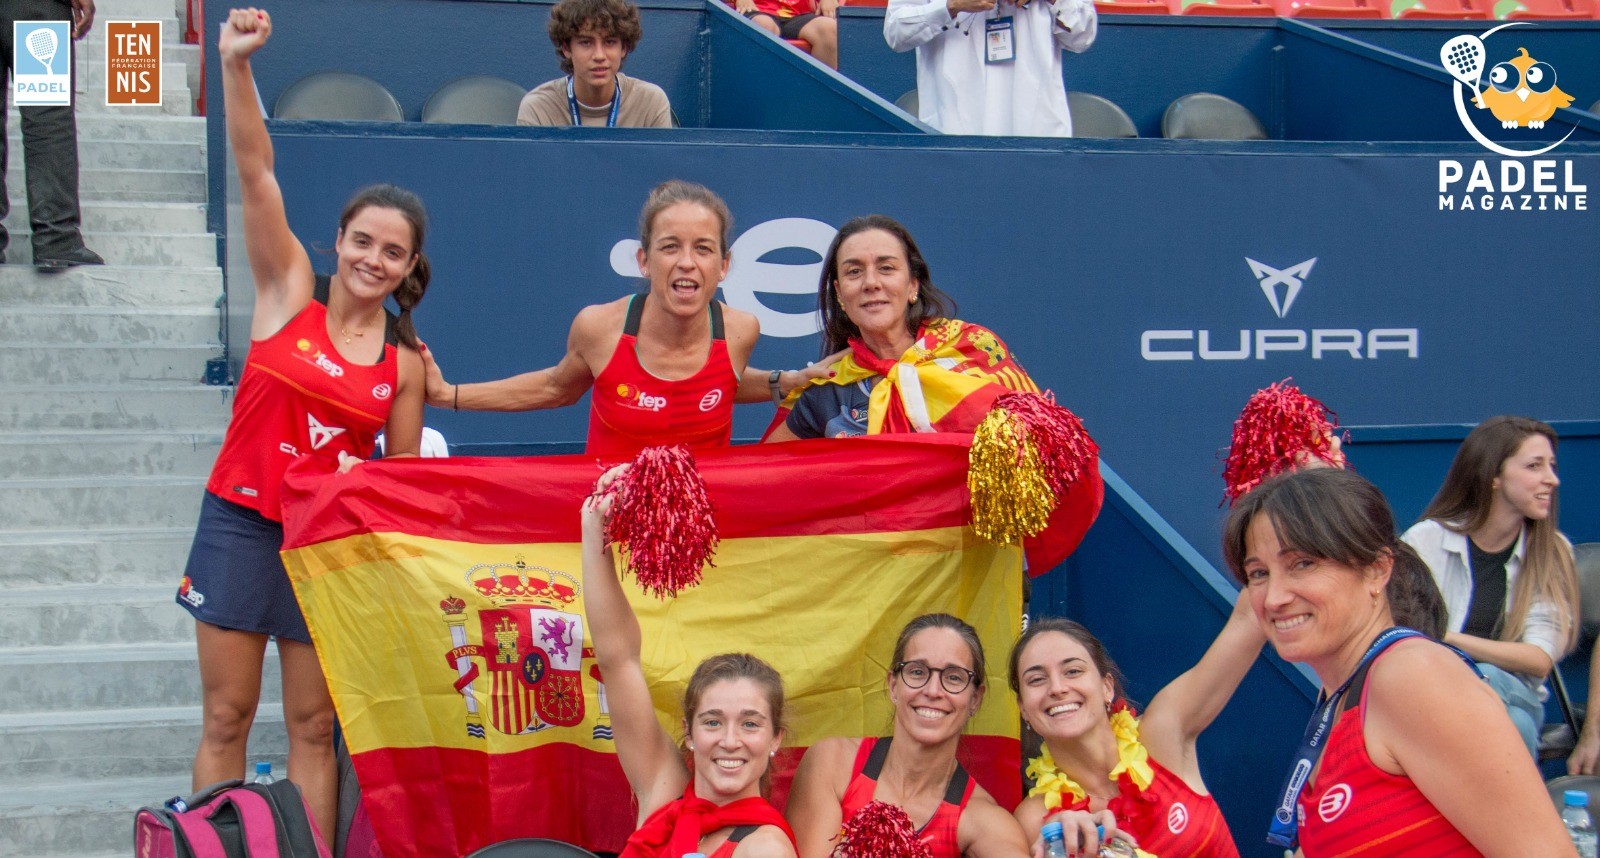 Le padel "Come" tenis en España